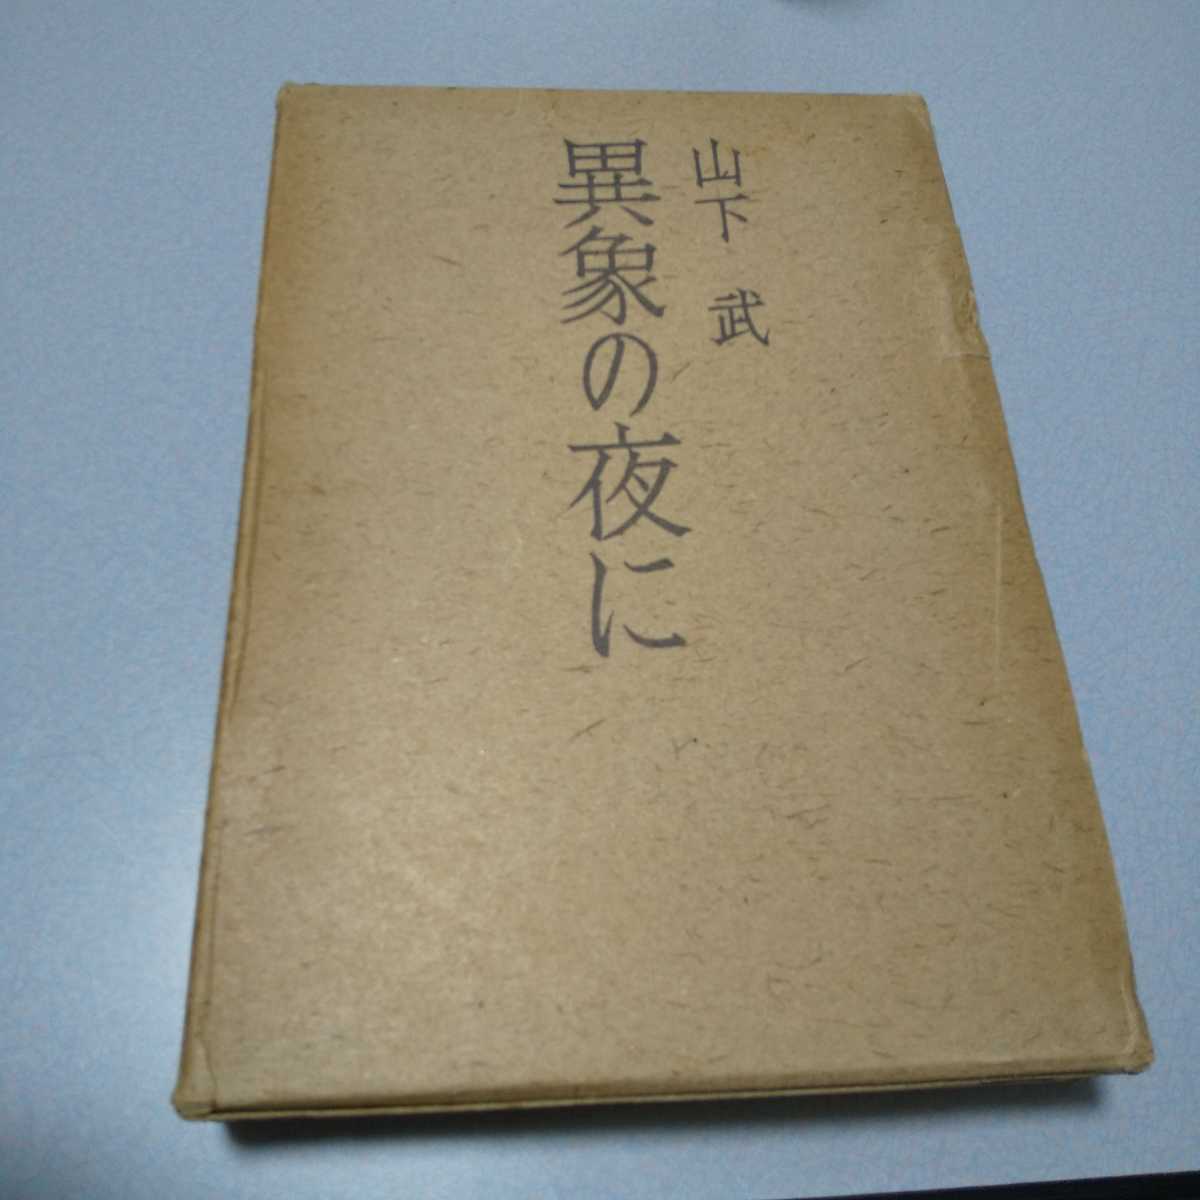 山下武「異象の夜に」審美社 1970年初版函の画像1